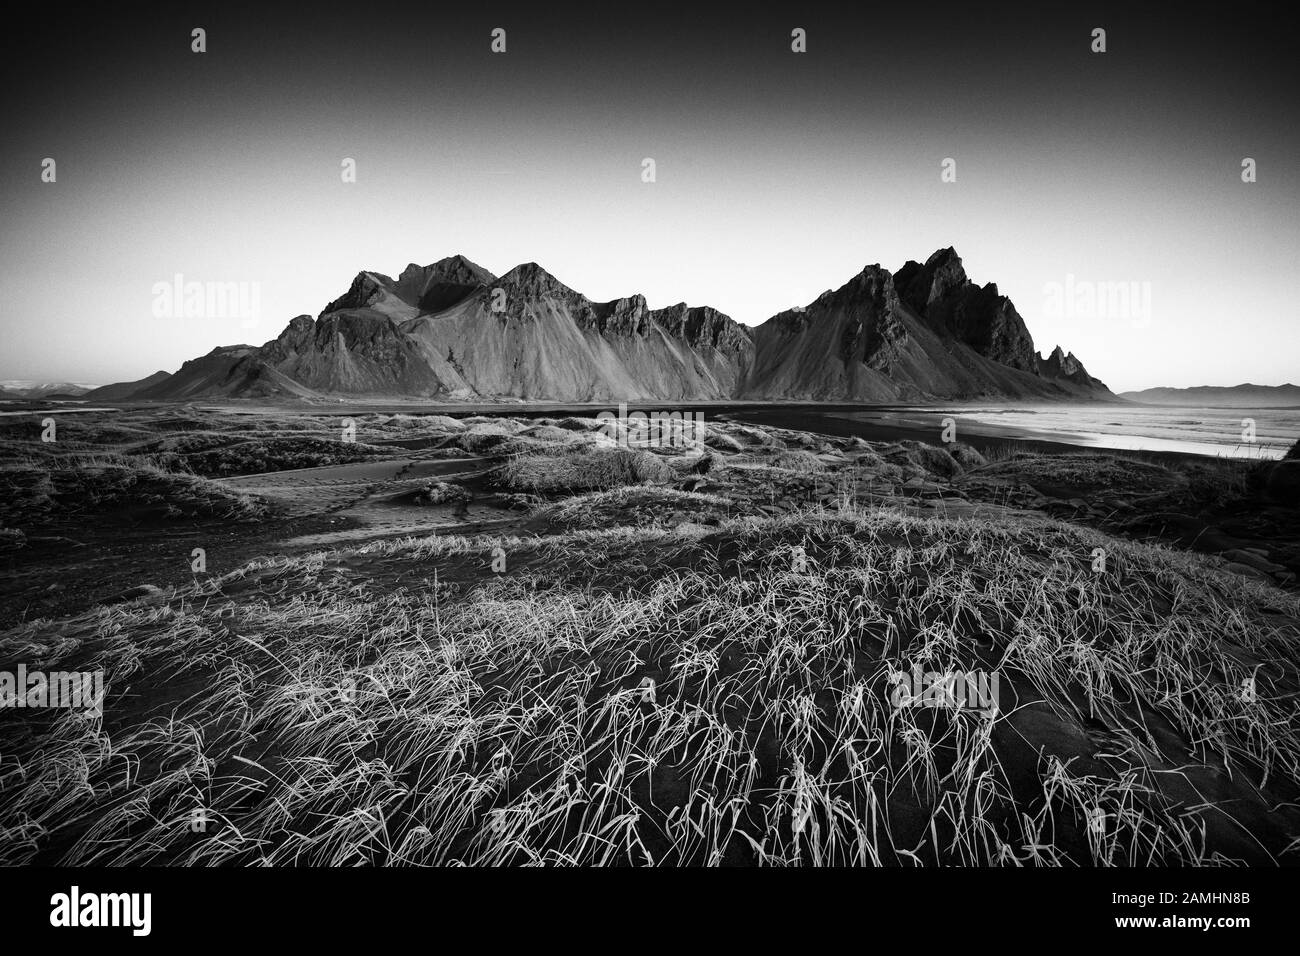 La chaîne de montagne Vestrahorn est située à Stokksnes, au sud du Cap d'Islande. Pics atteignant 445 m de hauteur autour des dunes de sable volcanique noires. Banque D'Images